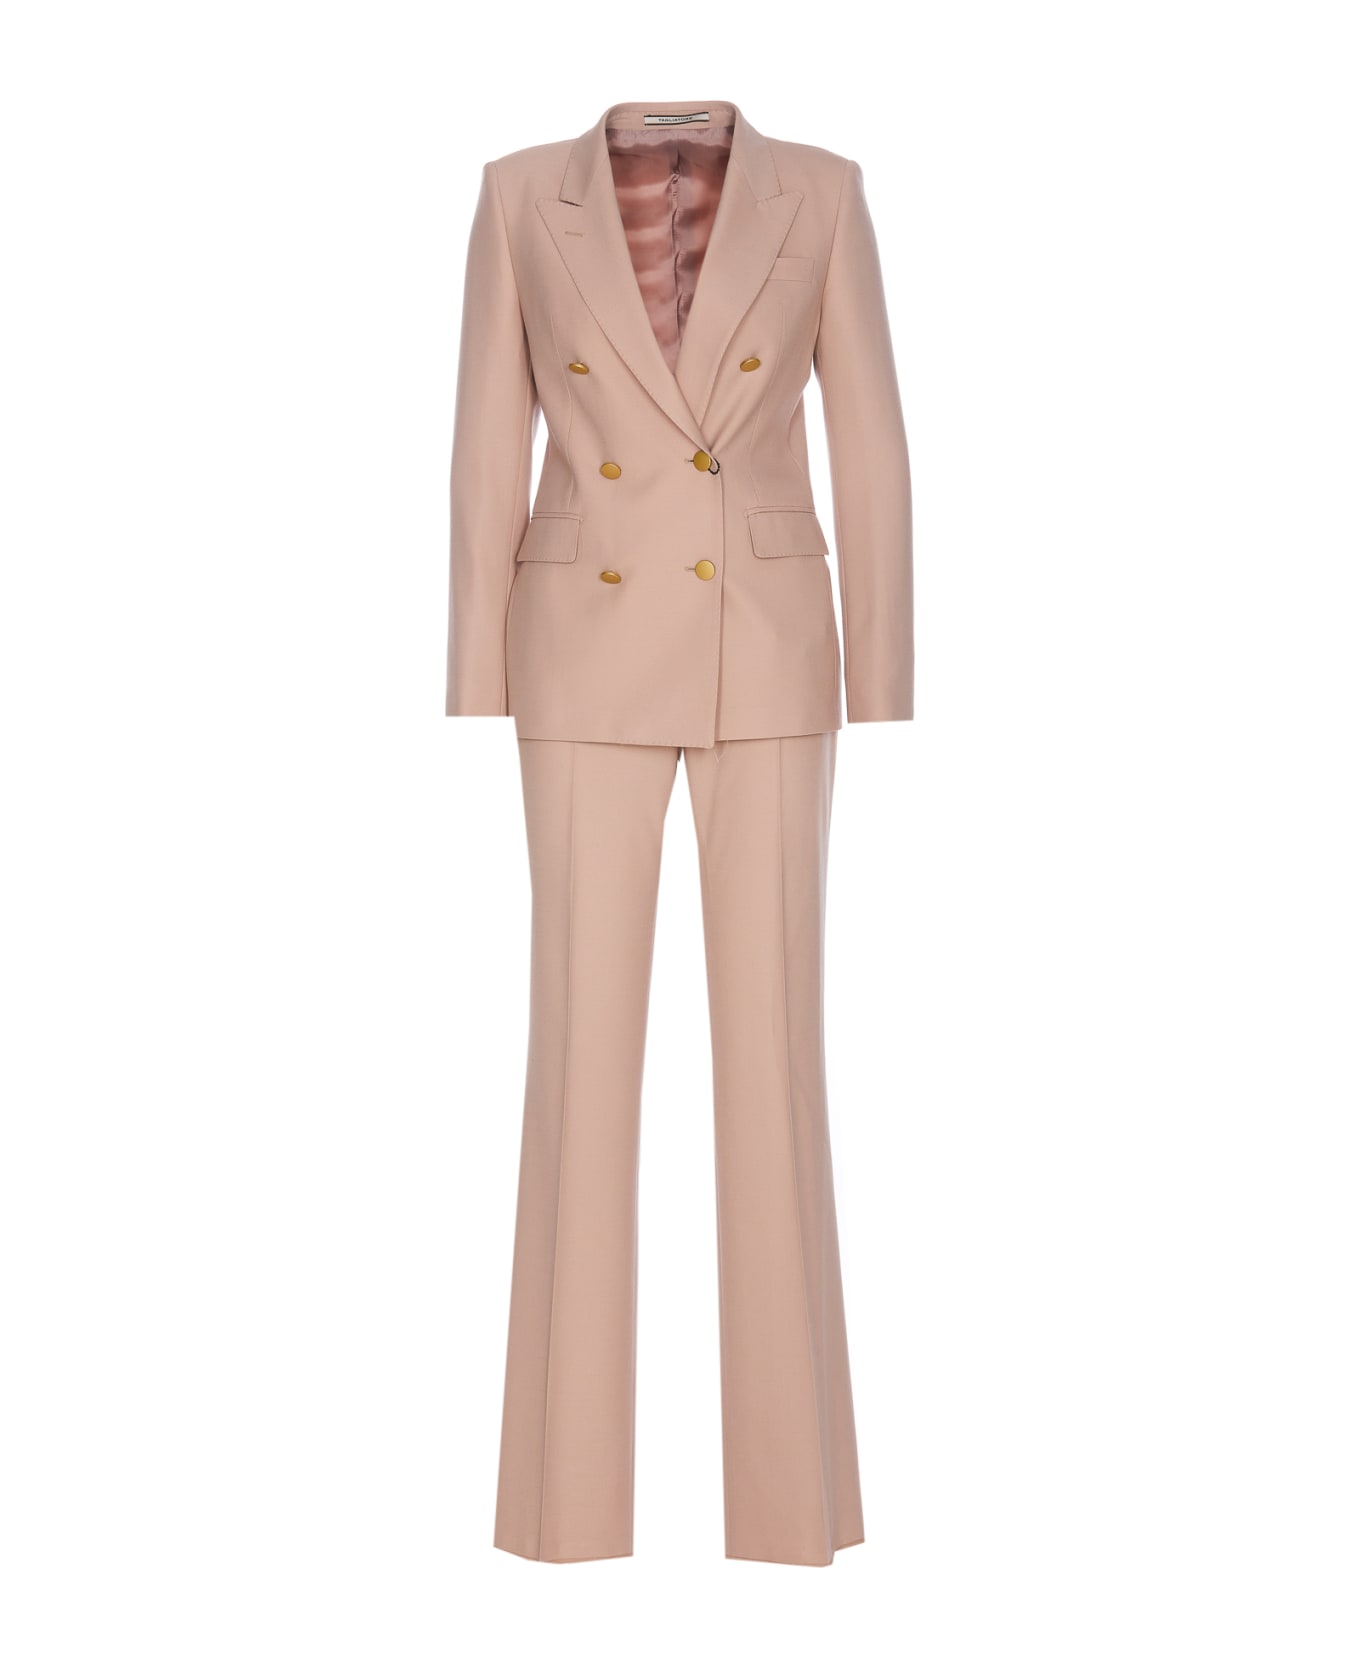 Tagliatore T-parigi Suit - Pink ブレザー